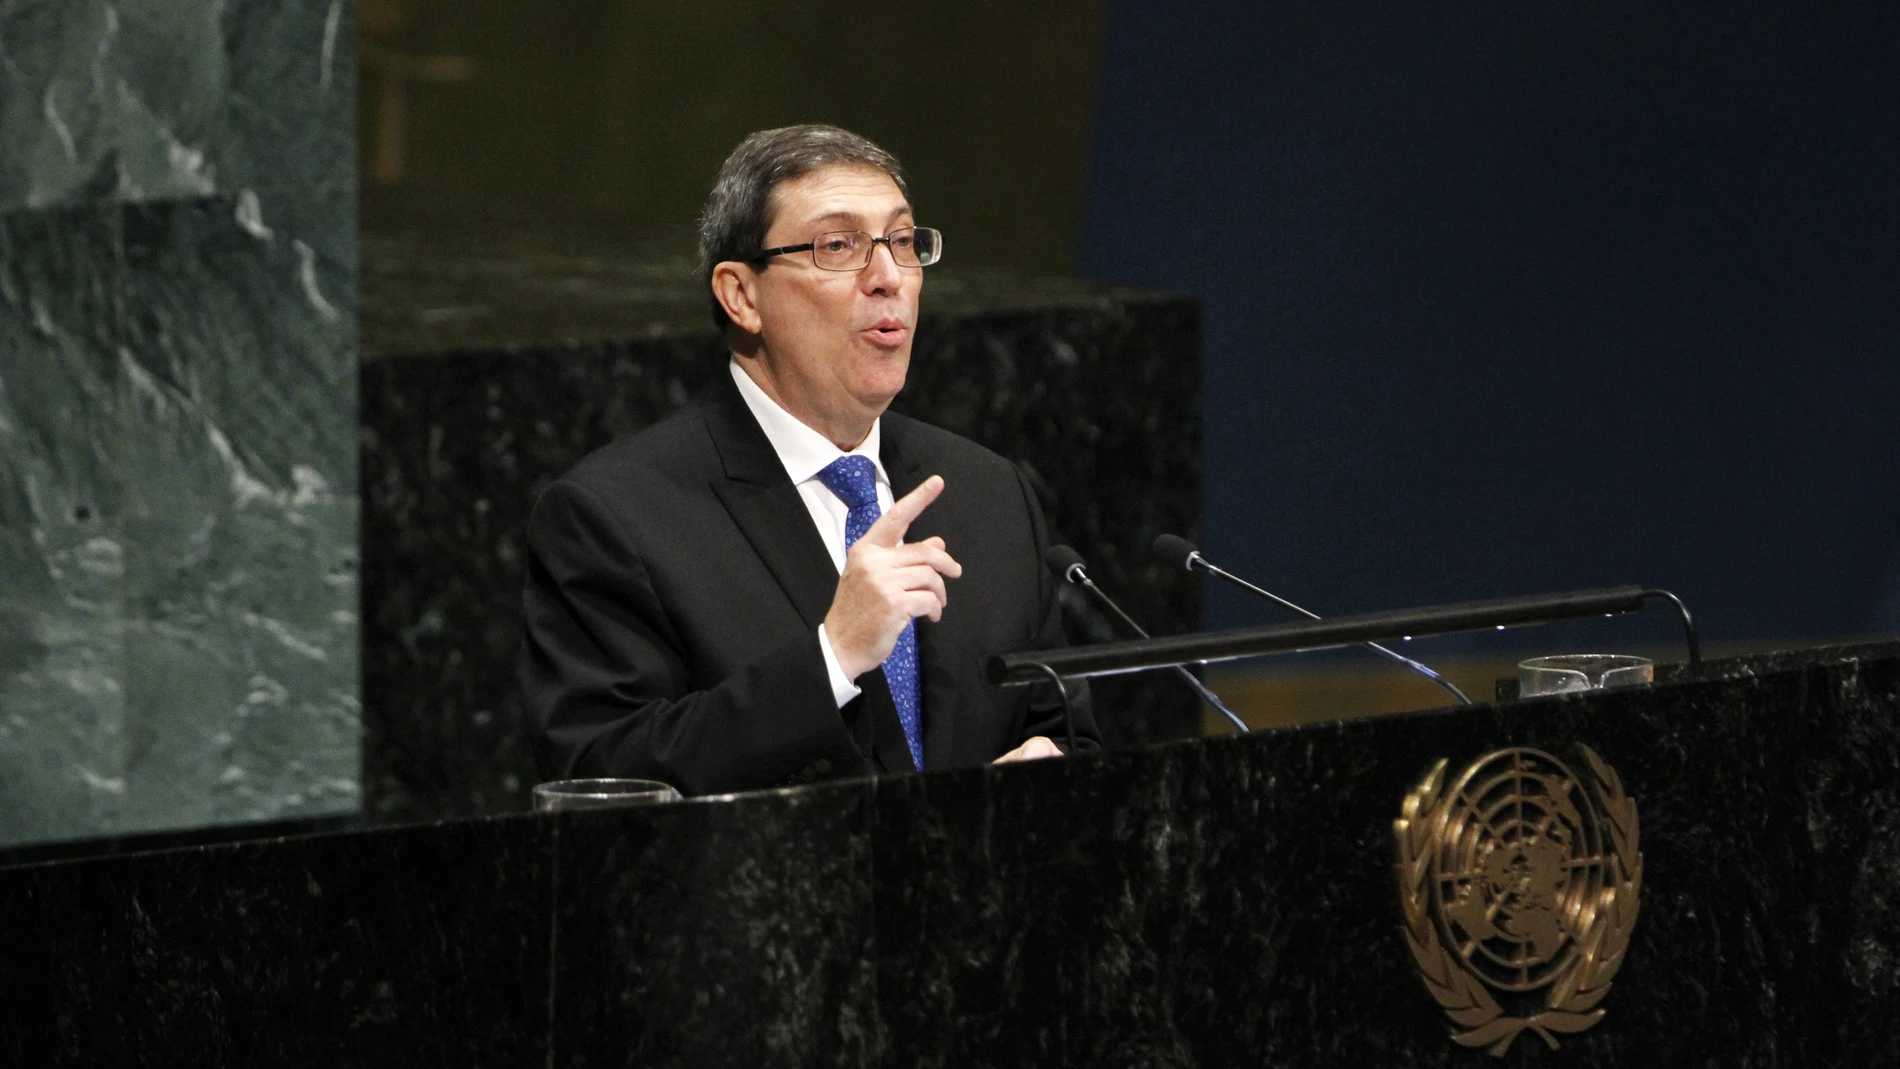 El ministro de Asuntos Exteriores de Cuba, Bruno Rodríguez, durante una intervención en Naciones Unidas.22/09/2020